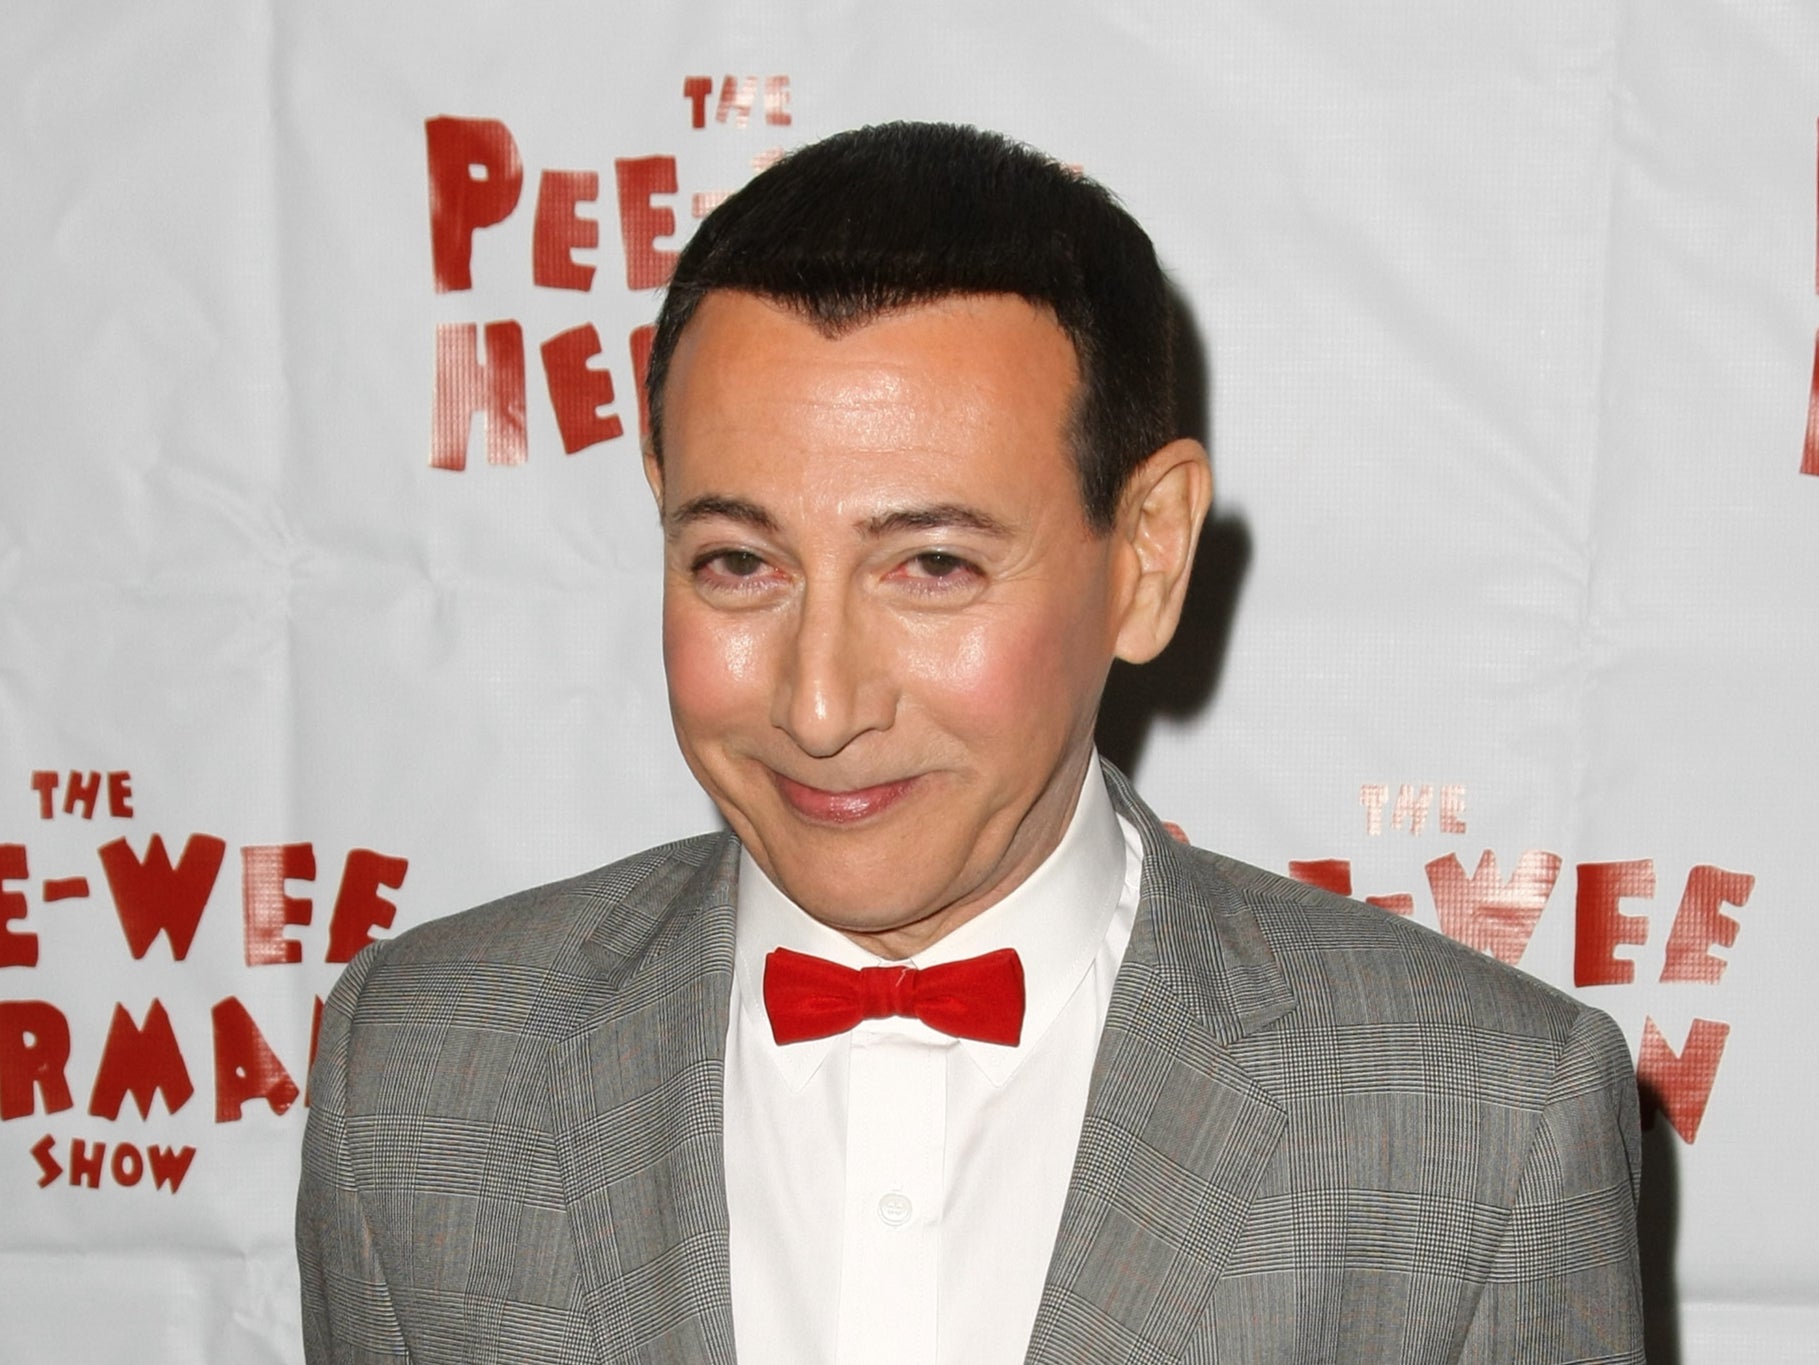 Actor Paul Ruebens in character as “Pee-Wee Herman” in 2010